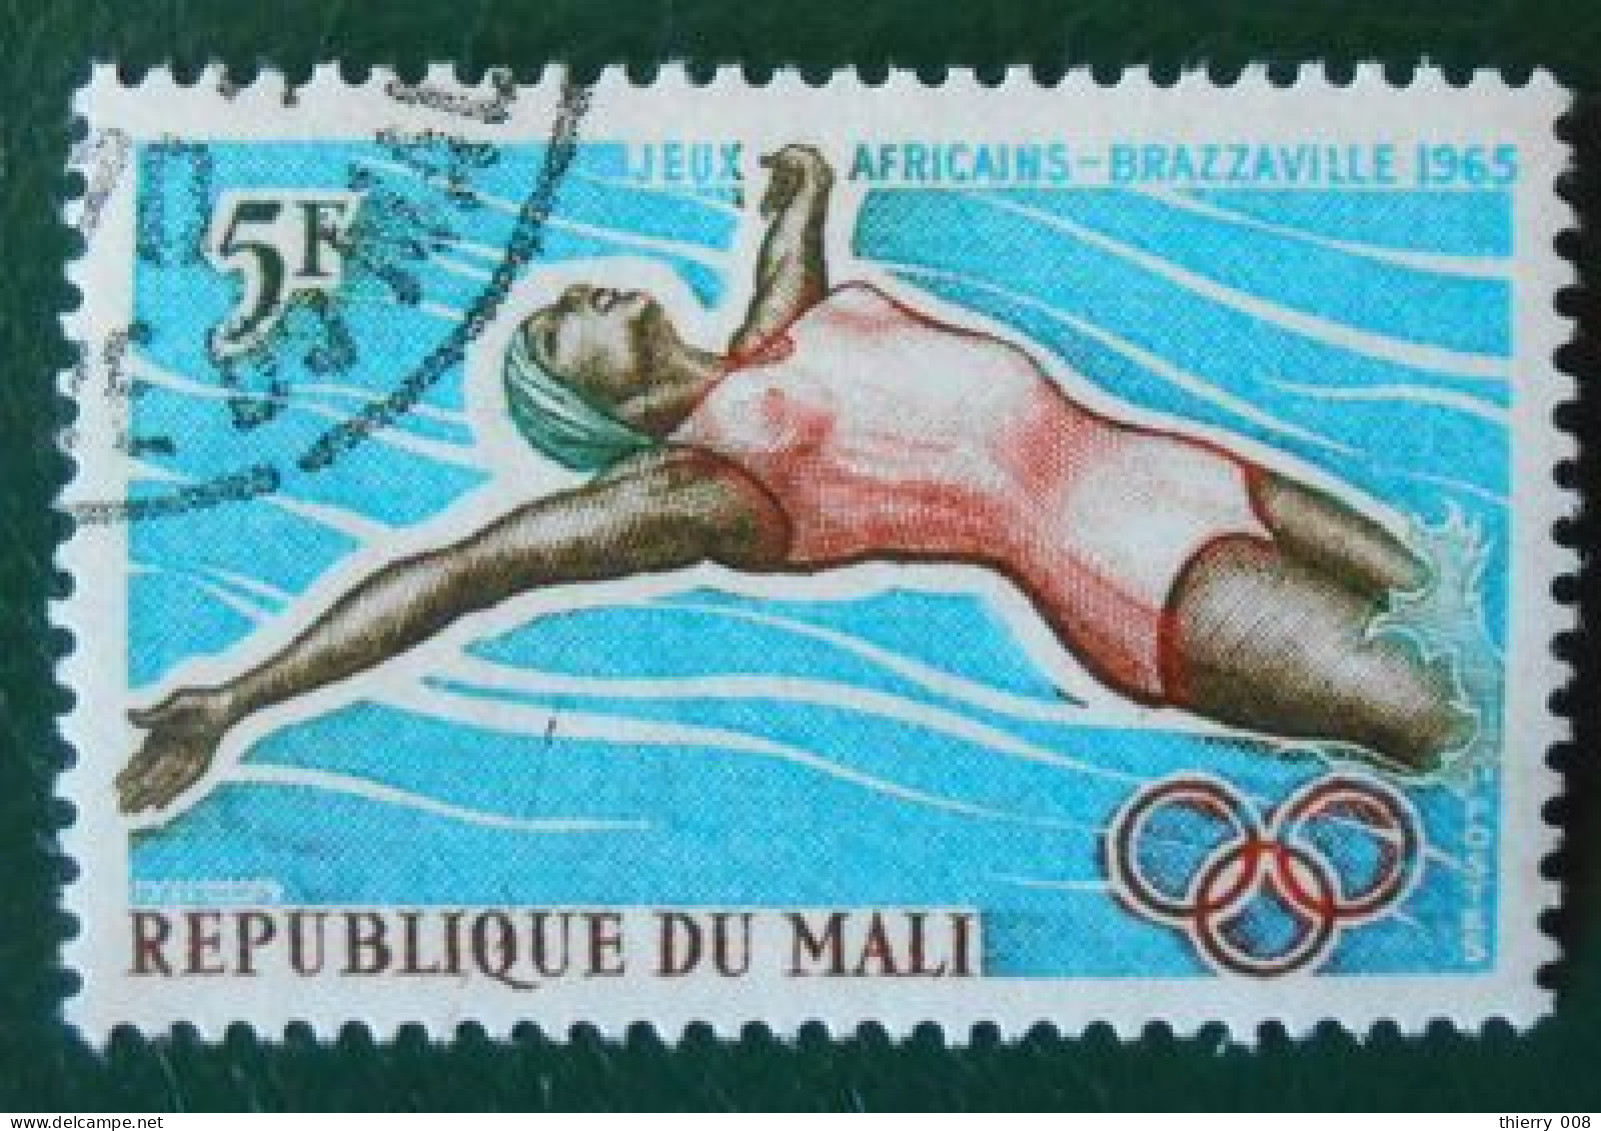 04 République Du Mali Jeux Africains Brazzaville 1965 Natation - Nuoto